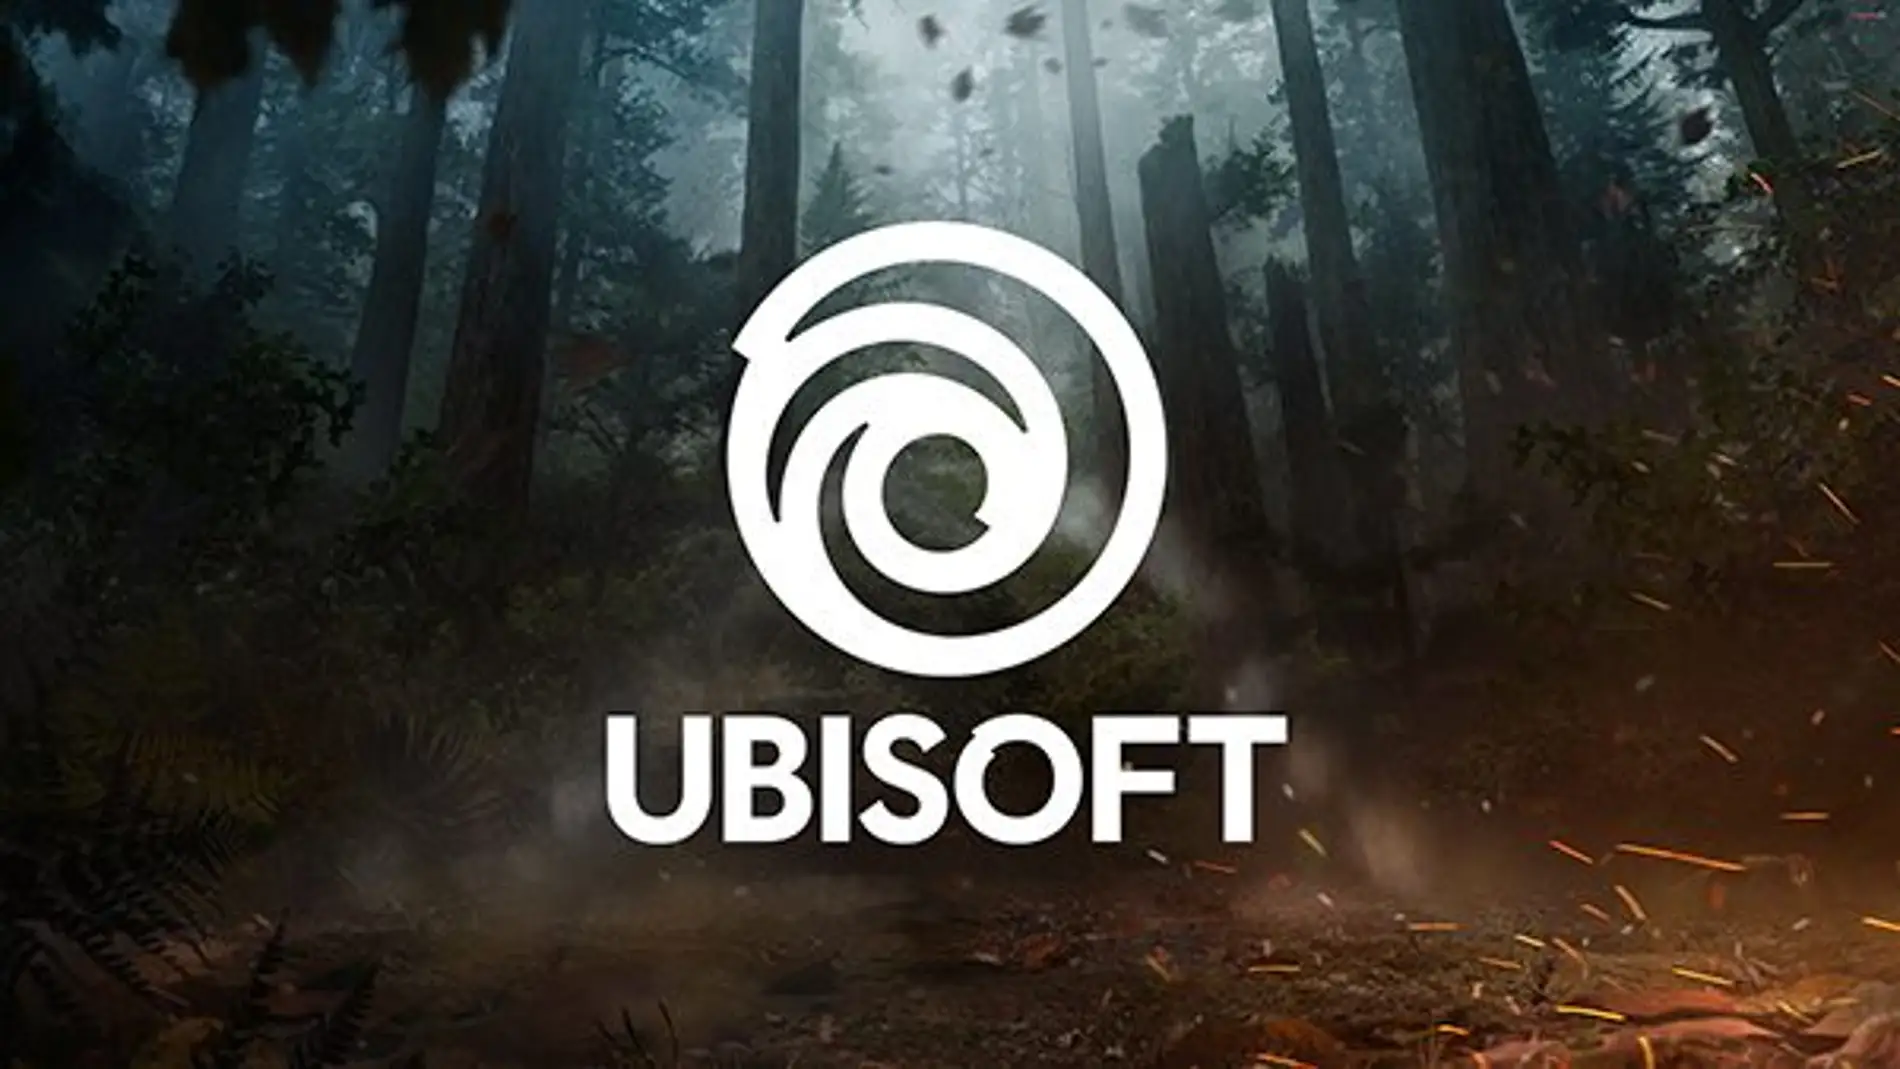 Nuevo logo de Ubisoft